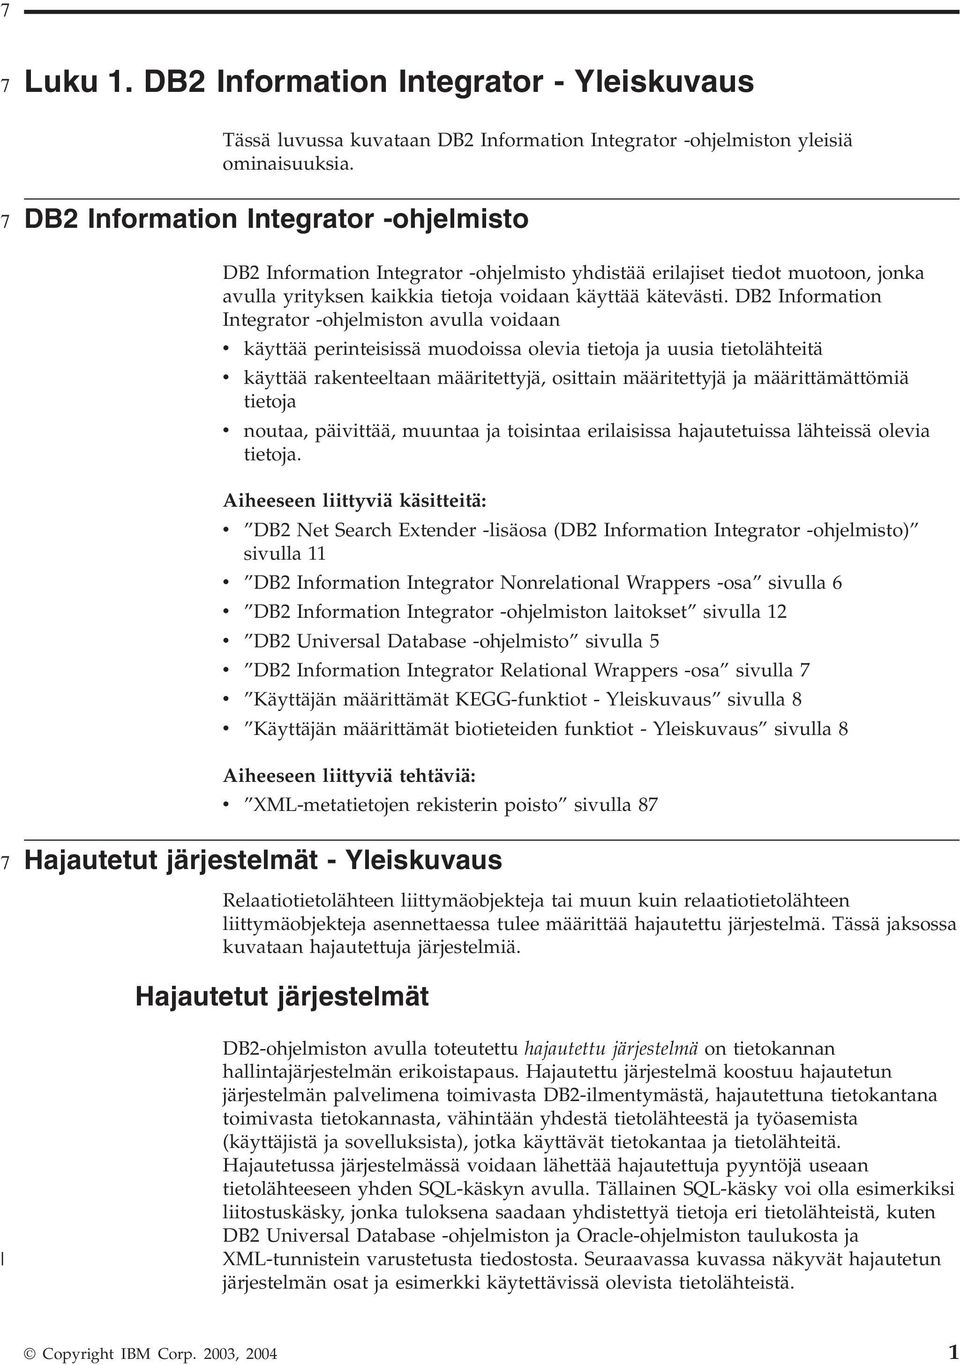 DB2 Information Integrator -ohjelmiston aulla oidaan käyttää perinteisissä muodoissa oleia tietoja ja uusia tietolähteitä käyttää rakenteeltaan määritettyjä, osittain määritettyjä ja määrittämättömiä